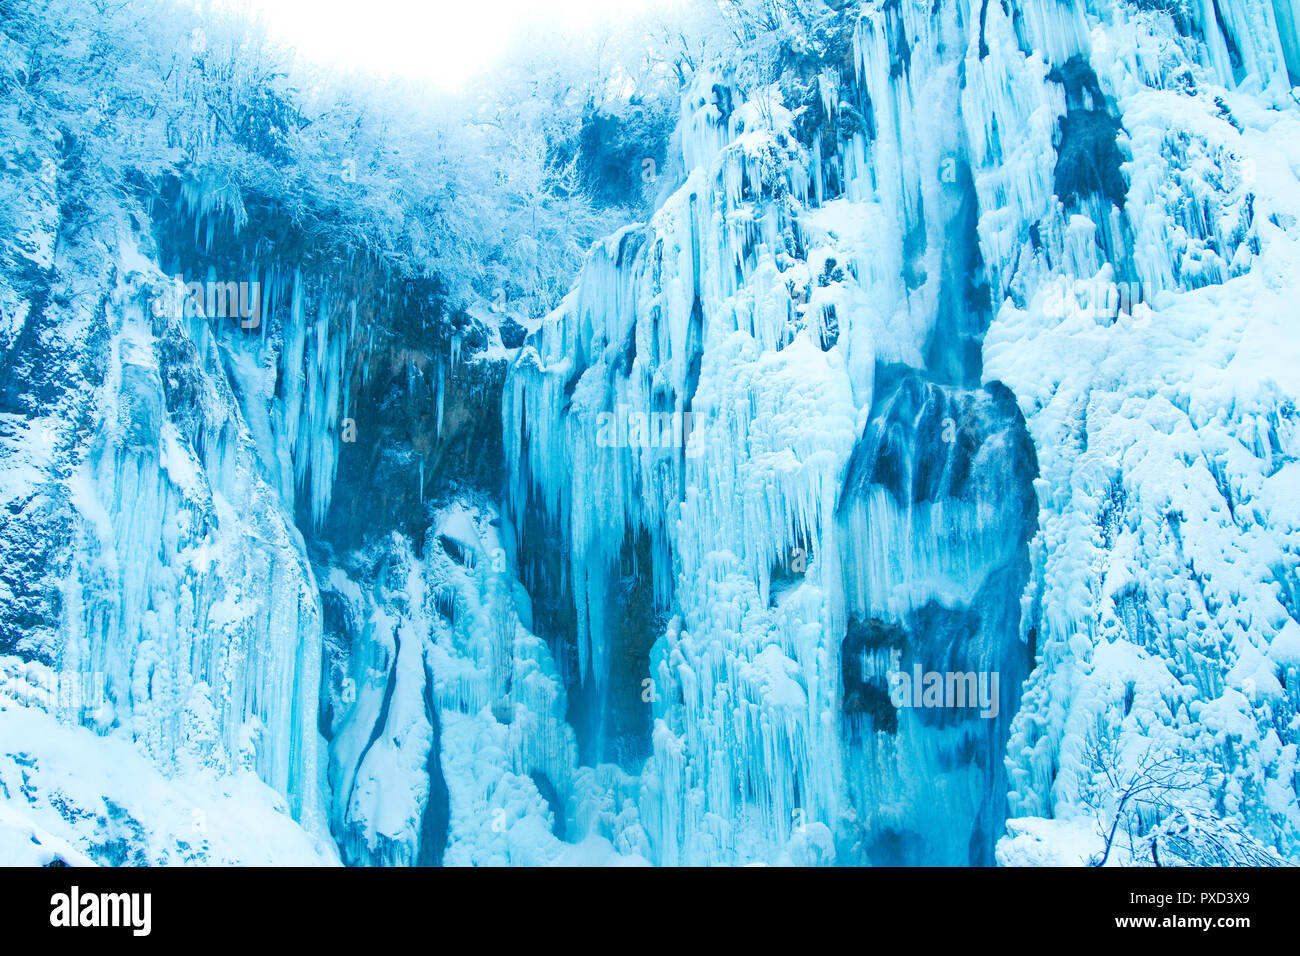 La Croatie, de Plitivice, cascades de glace en hiver dans le parc nature populaires Plitvicka jezera Banque D'Images